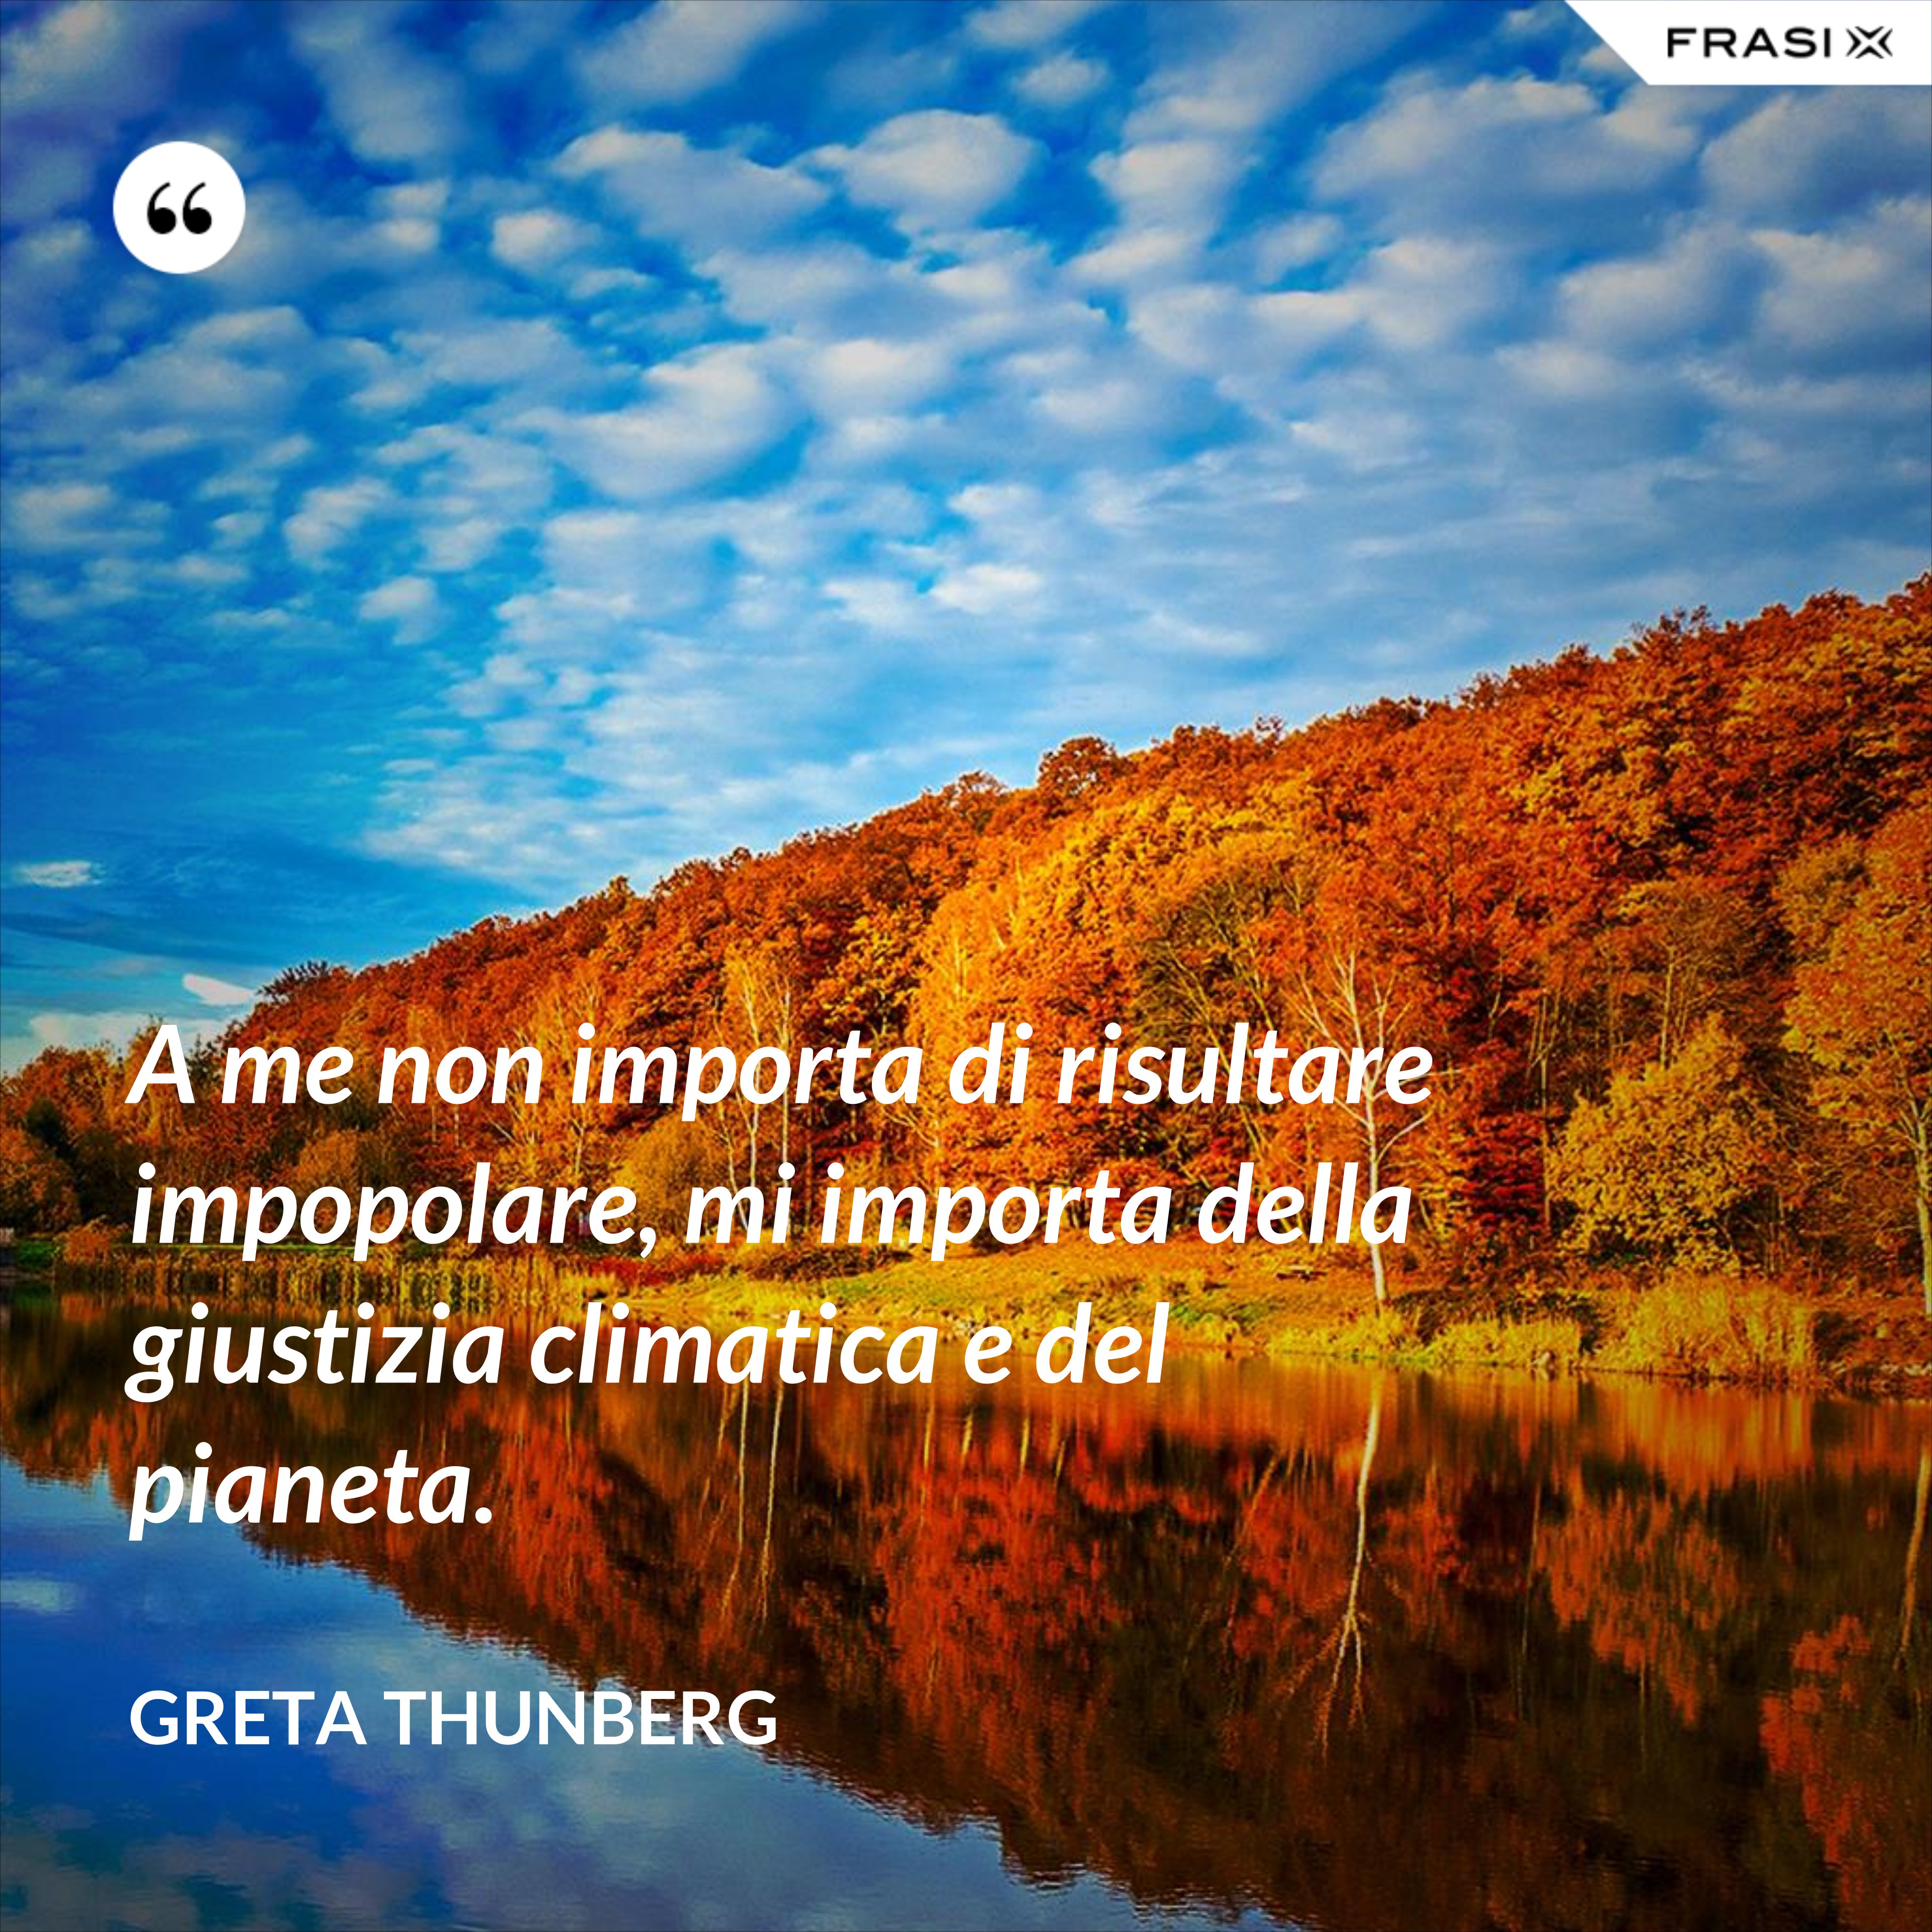 A me non importa di risultare impopolare, mi importa della giustizia climatica e del pianeta. - Greta Thunberg